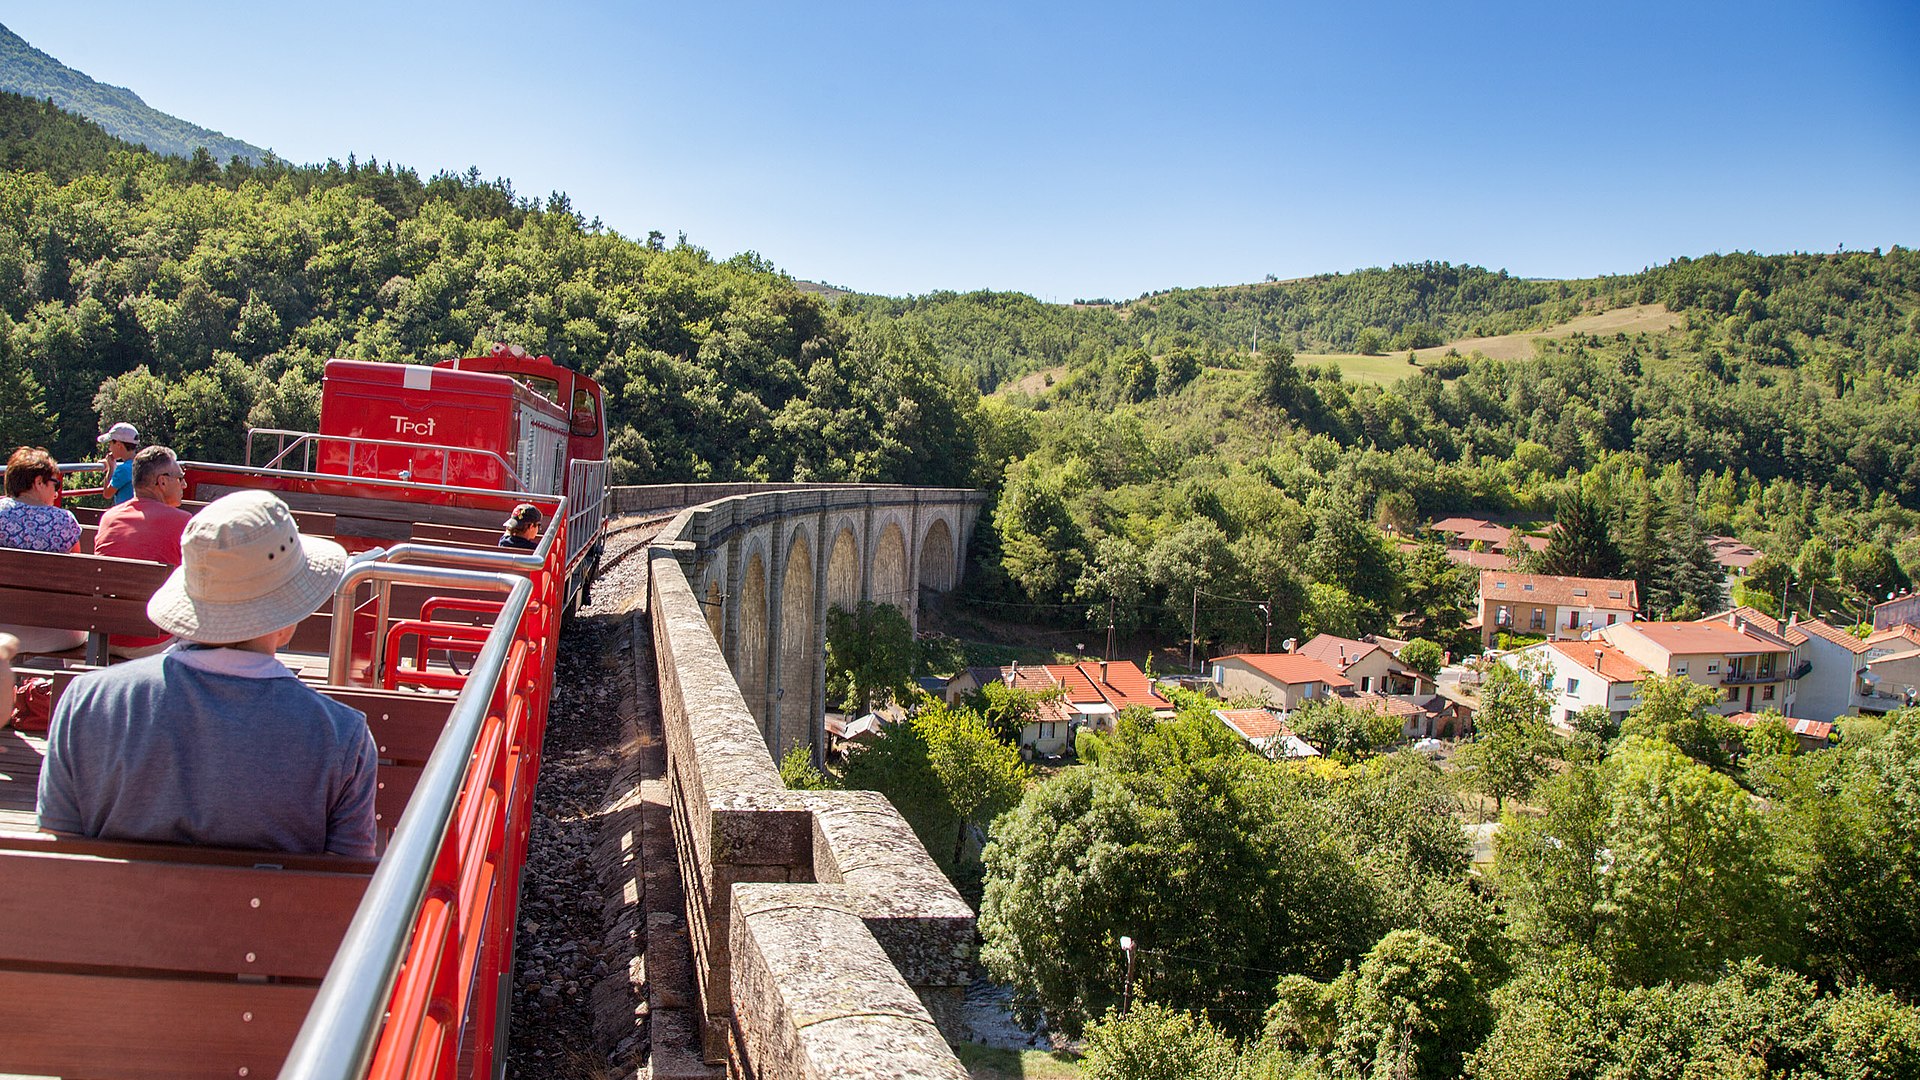 Le train rouge au viaduc d'Axat Par Jcb-caz-11 — CC BY-SA 4.0.